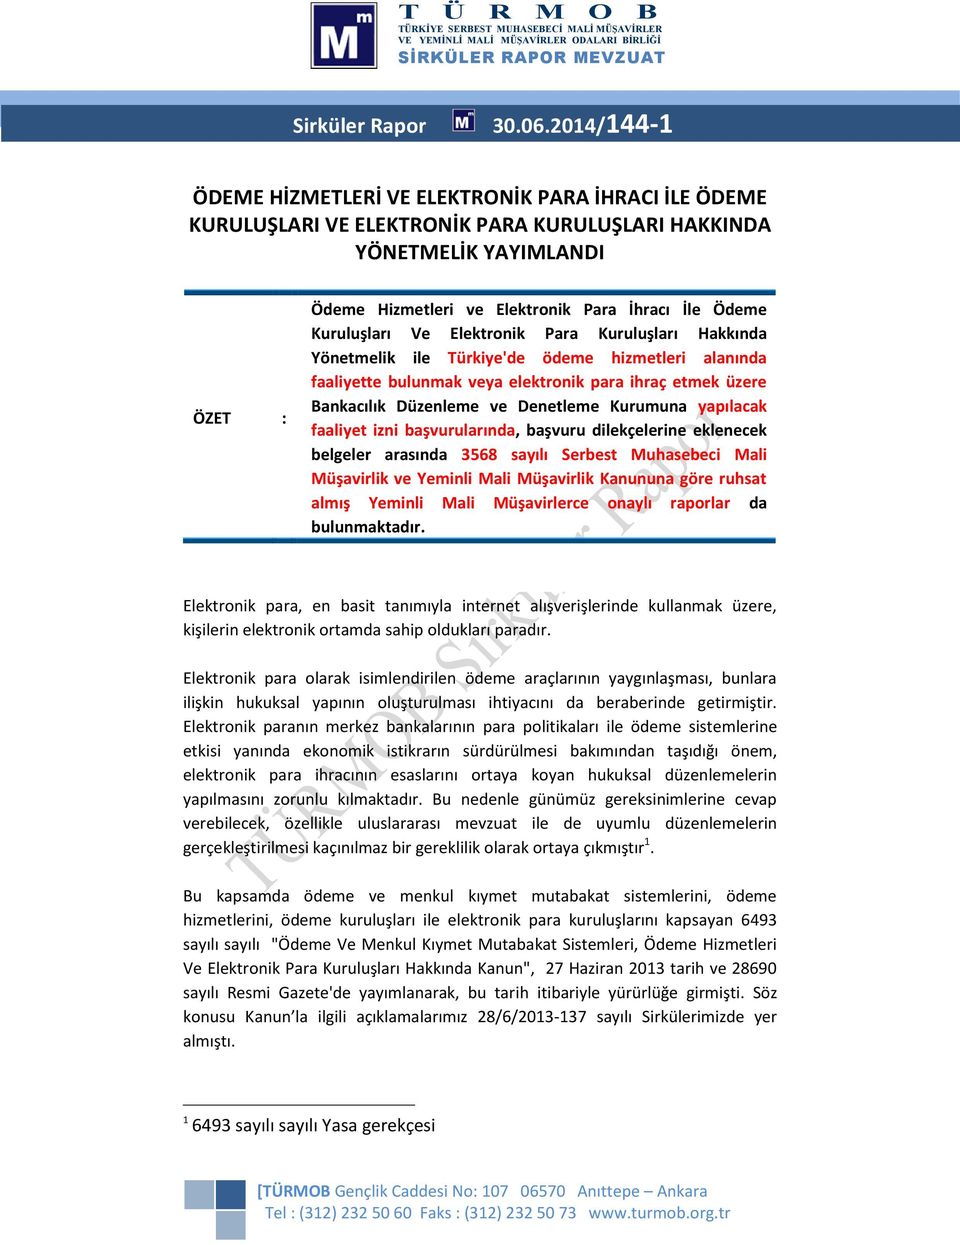 Kuruluşları Ve Elektronik Para Kuruluşları Hakkında Yönetmelik ile Türkiye'de ödeme hizmetleri alanında faaliyette bulunmak veya elektronik para ihraç etmek üzere Bankacılık Düzenleme ve Denetleme